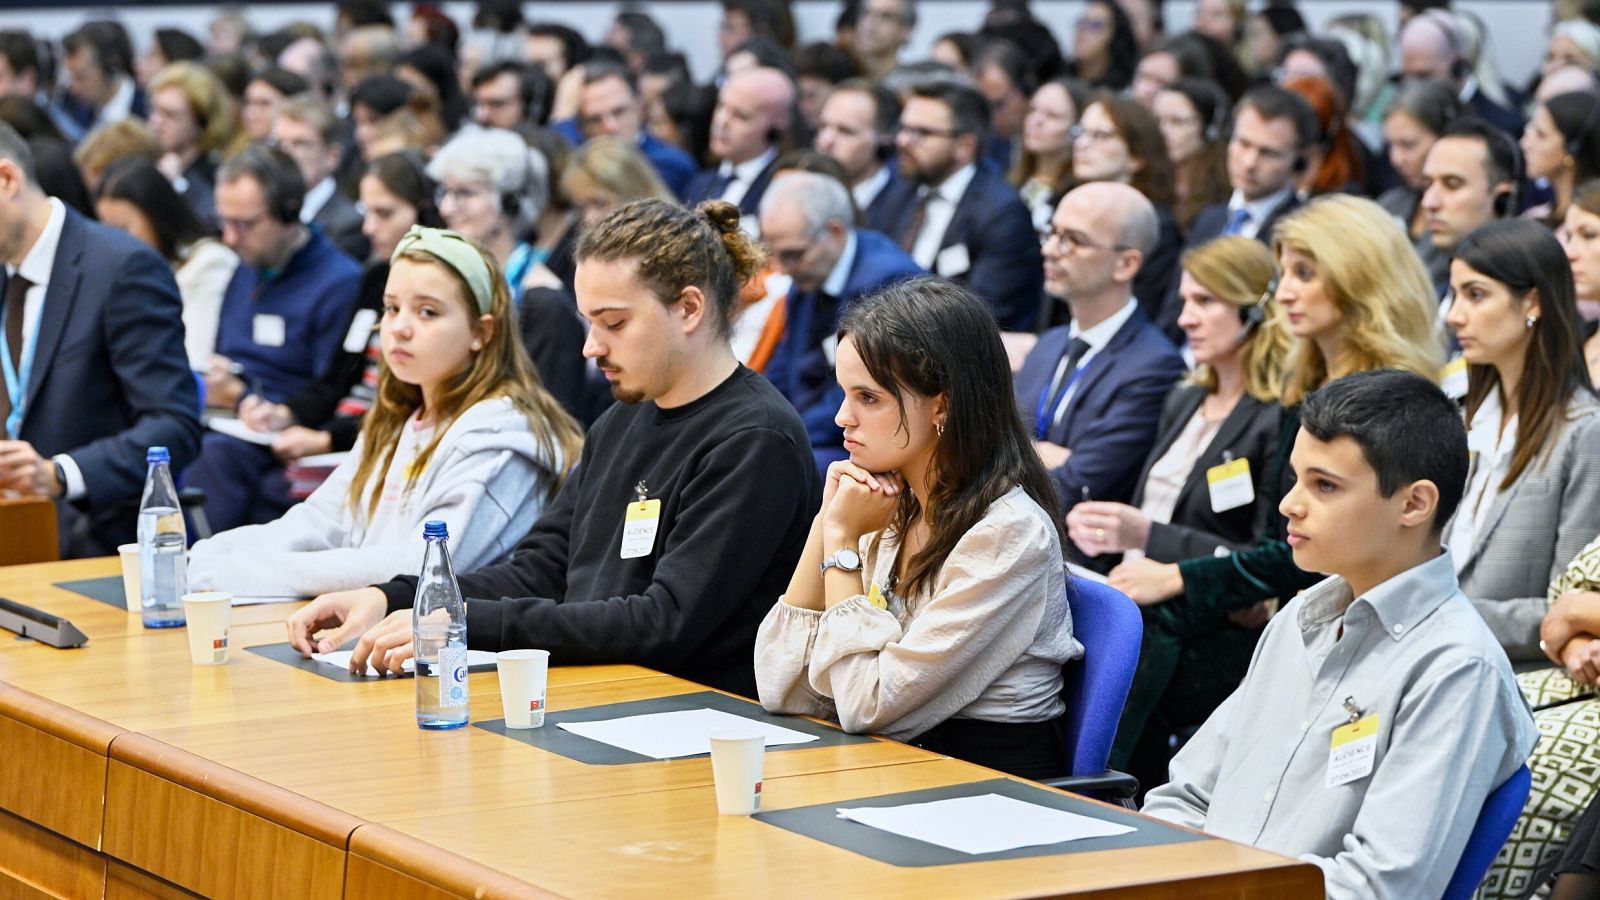 Una foto facilitada por el Tribunal Europeo de Derechos Humanos muestra a los jóvenes antes de la audiencia en Estrasburgo